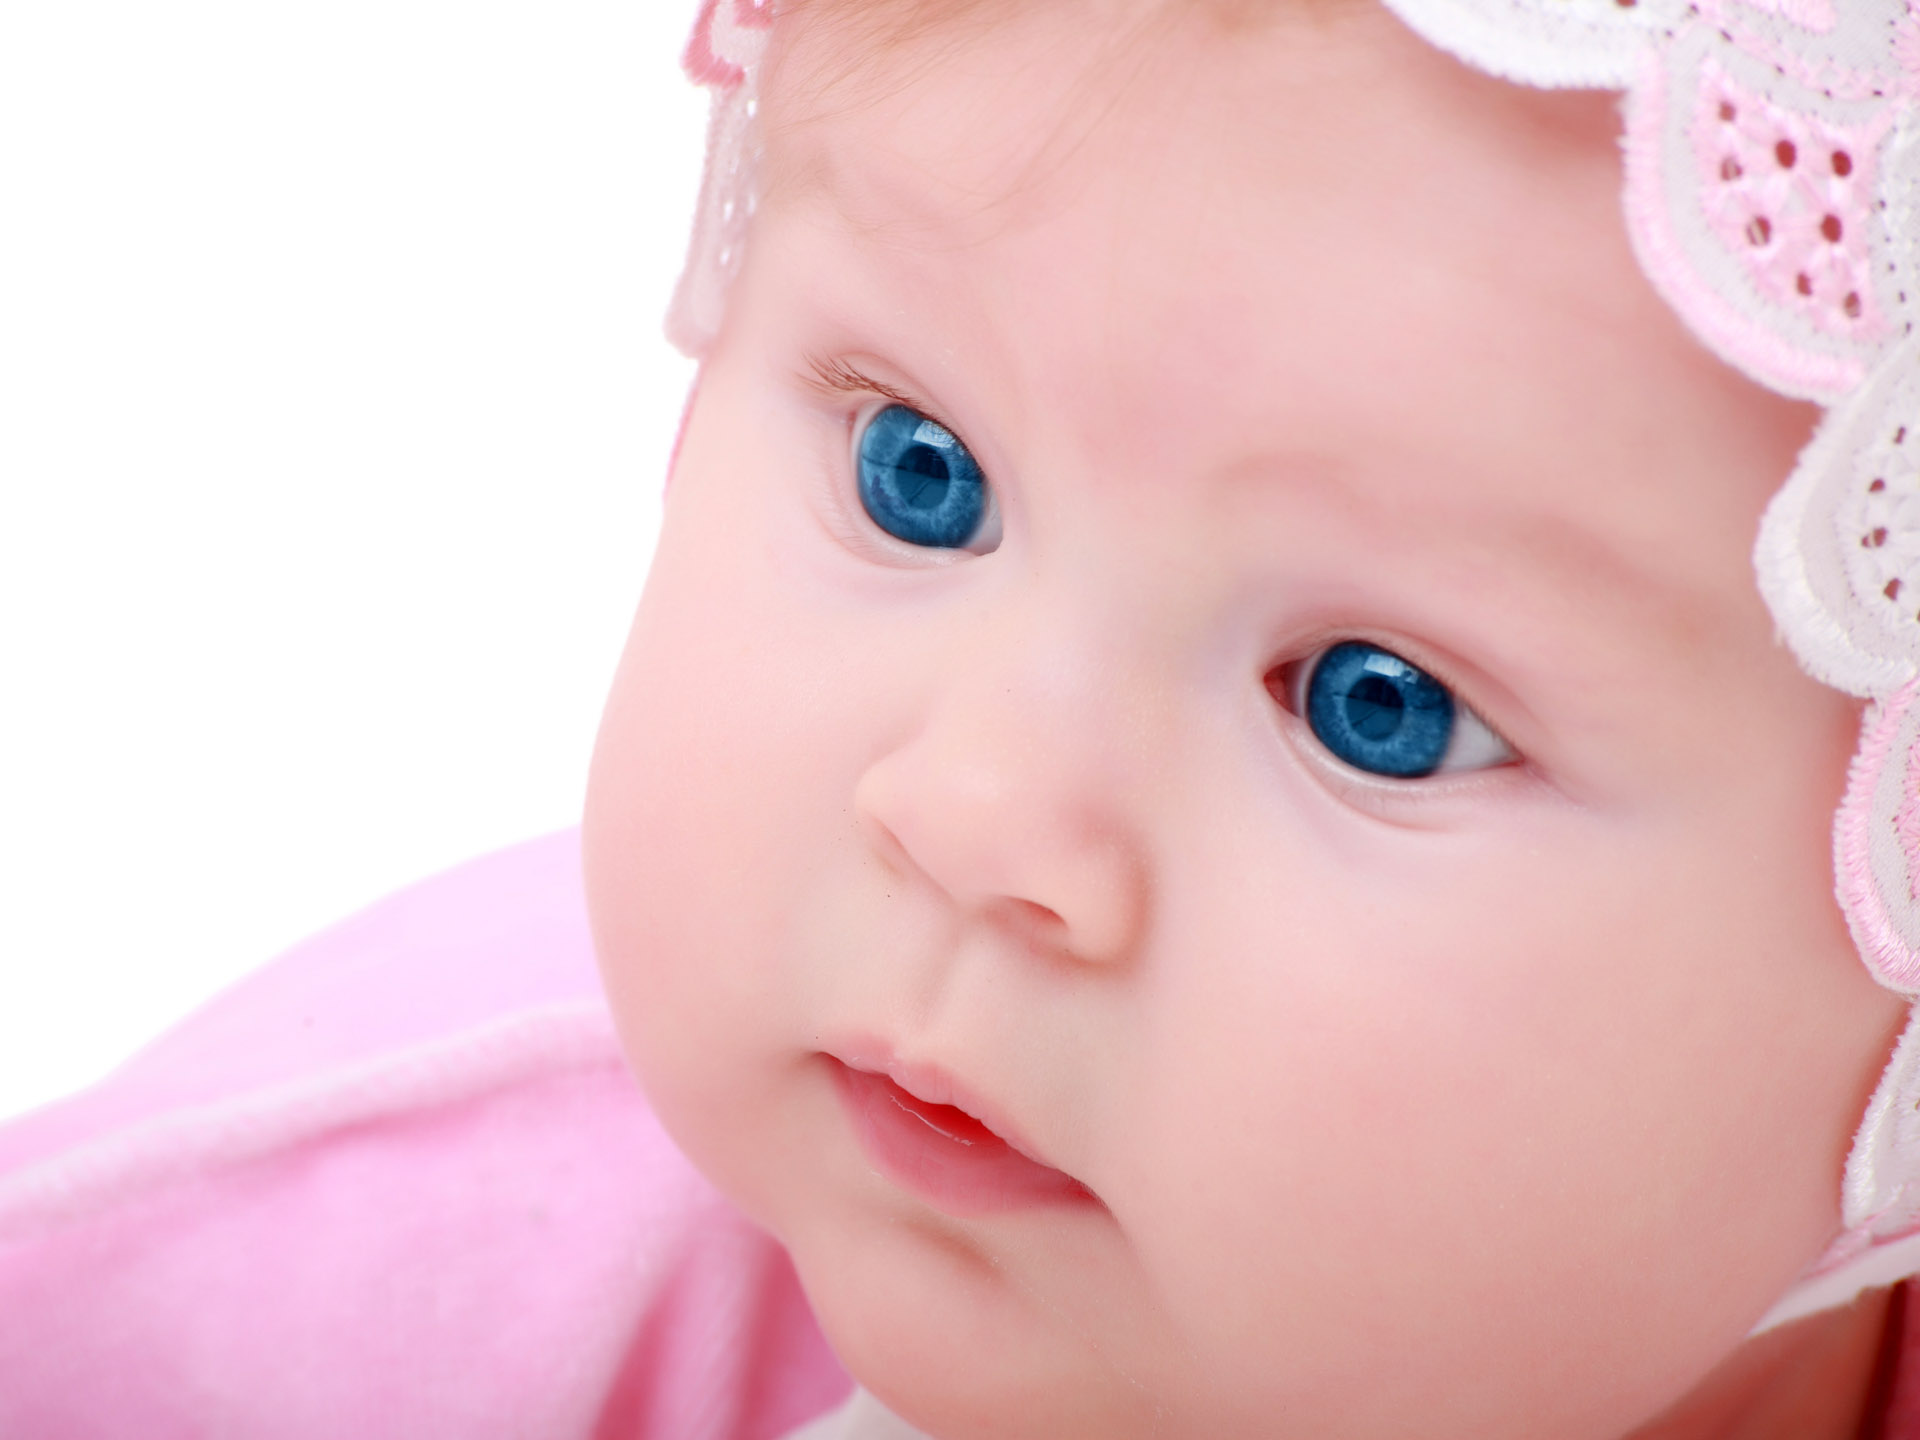 Adorable Cute Baby Girl Photos Wallpaper Inspiringmesh